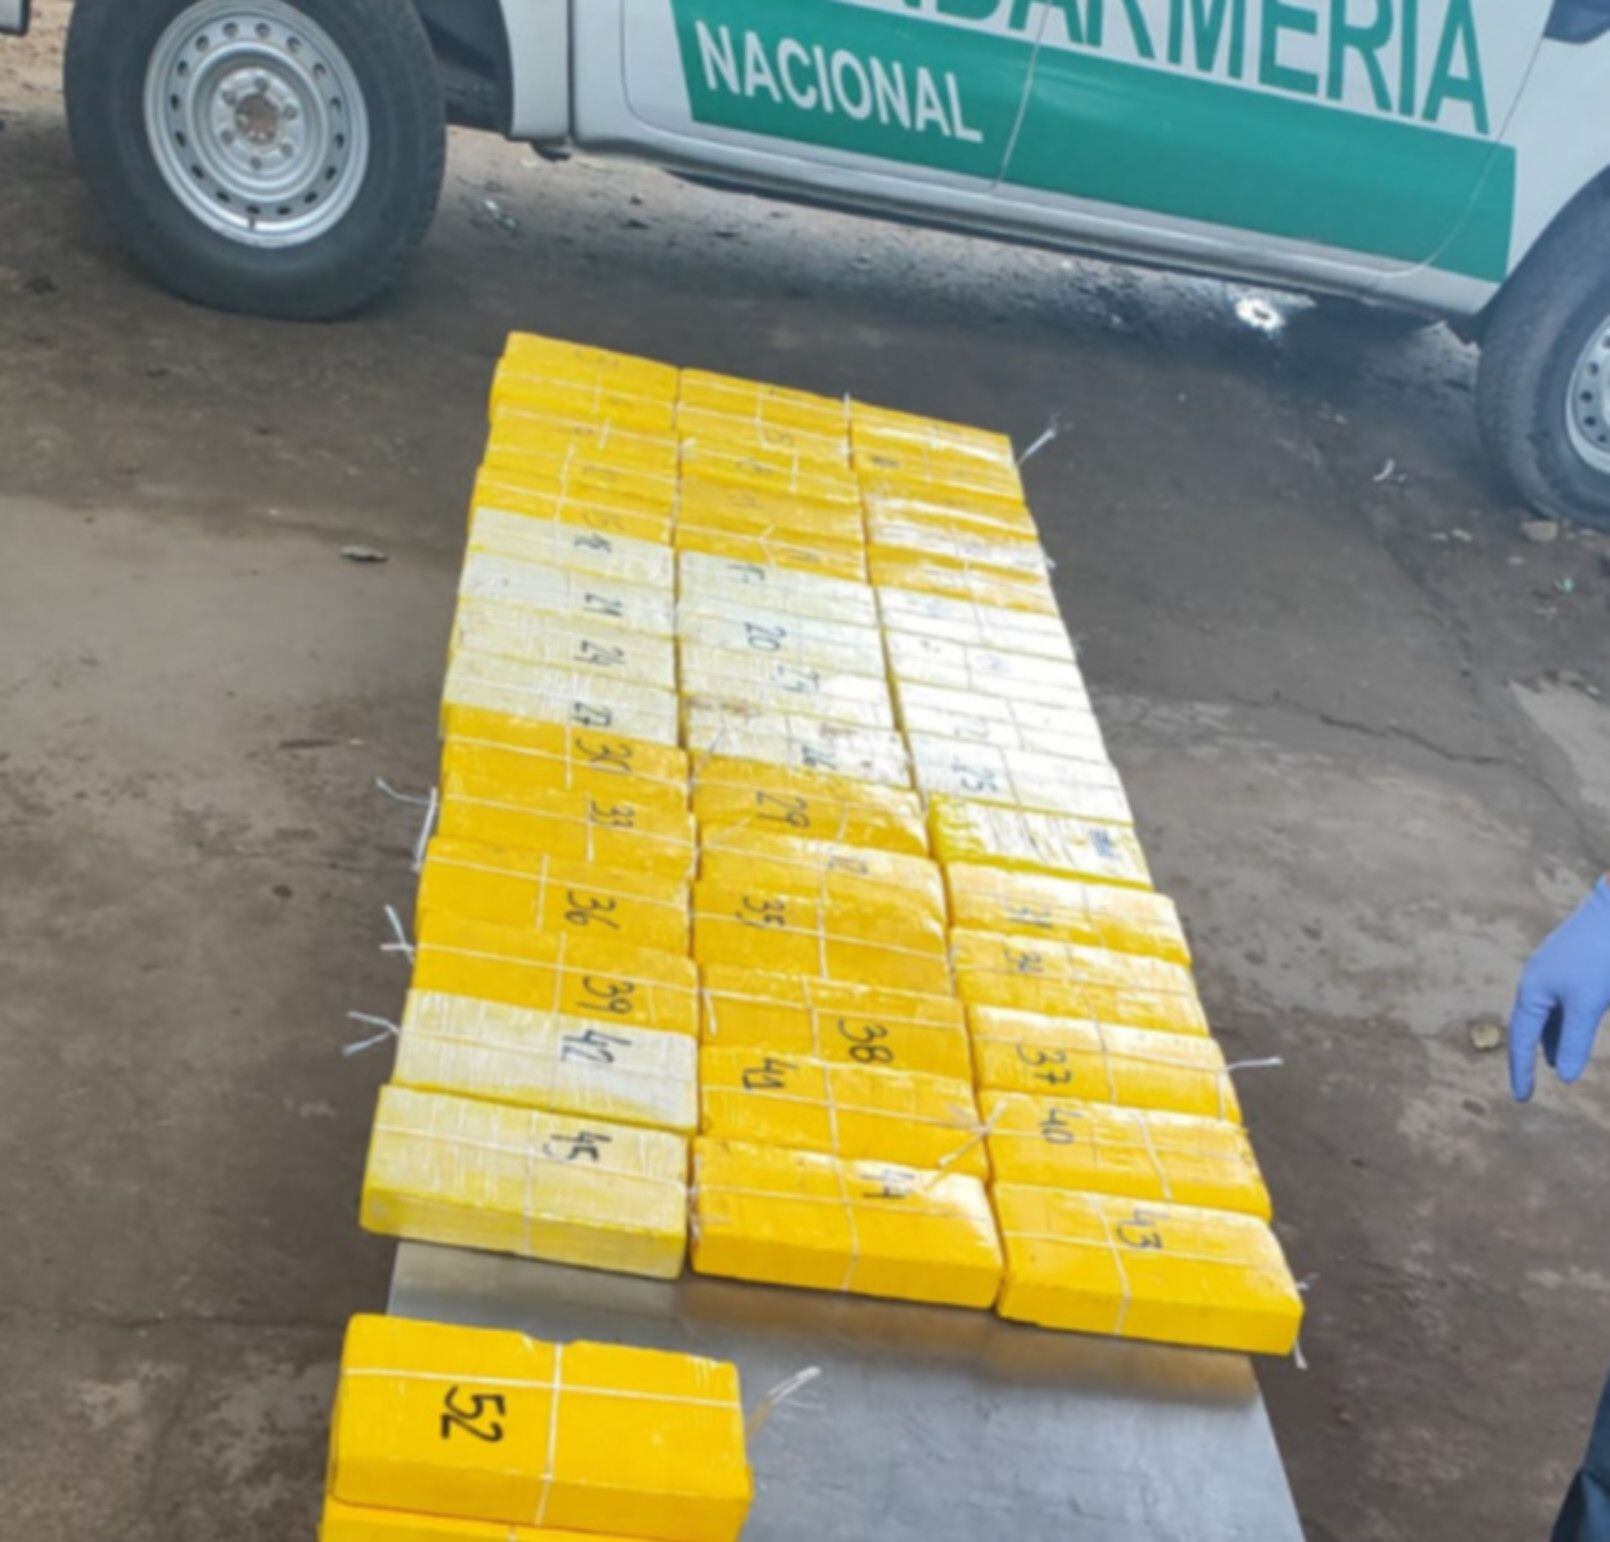 Gendarmería secuestró más de 64 kilos de cocaína ocultos en el techo de un auto en Salta (GNA)